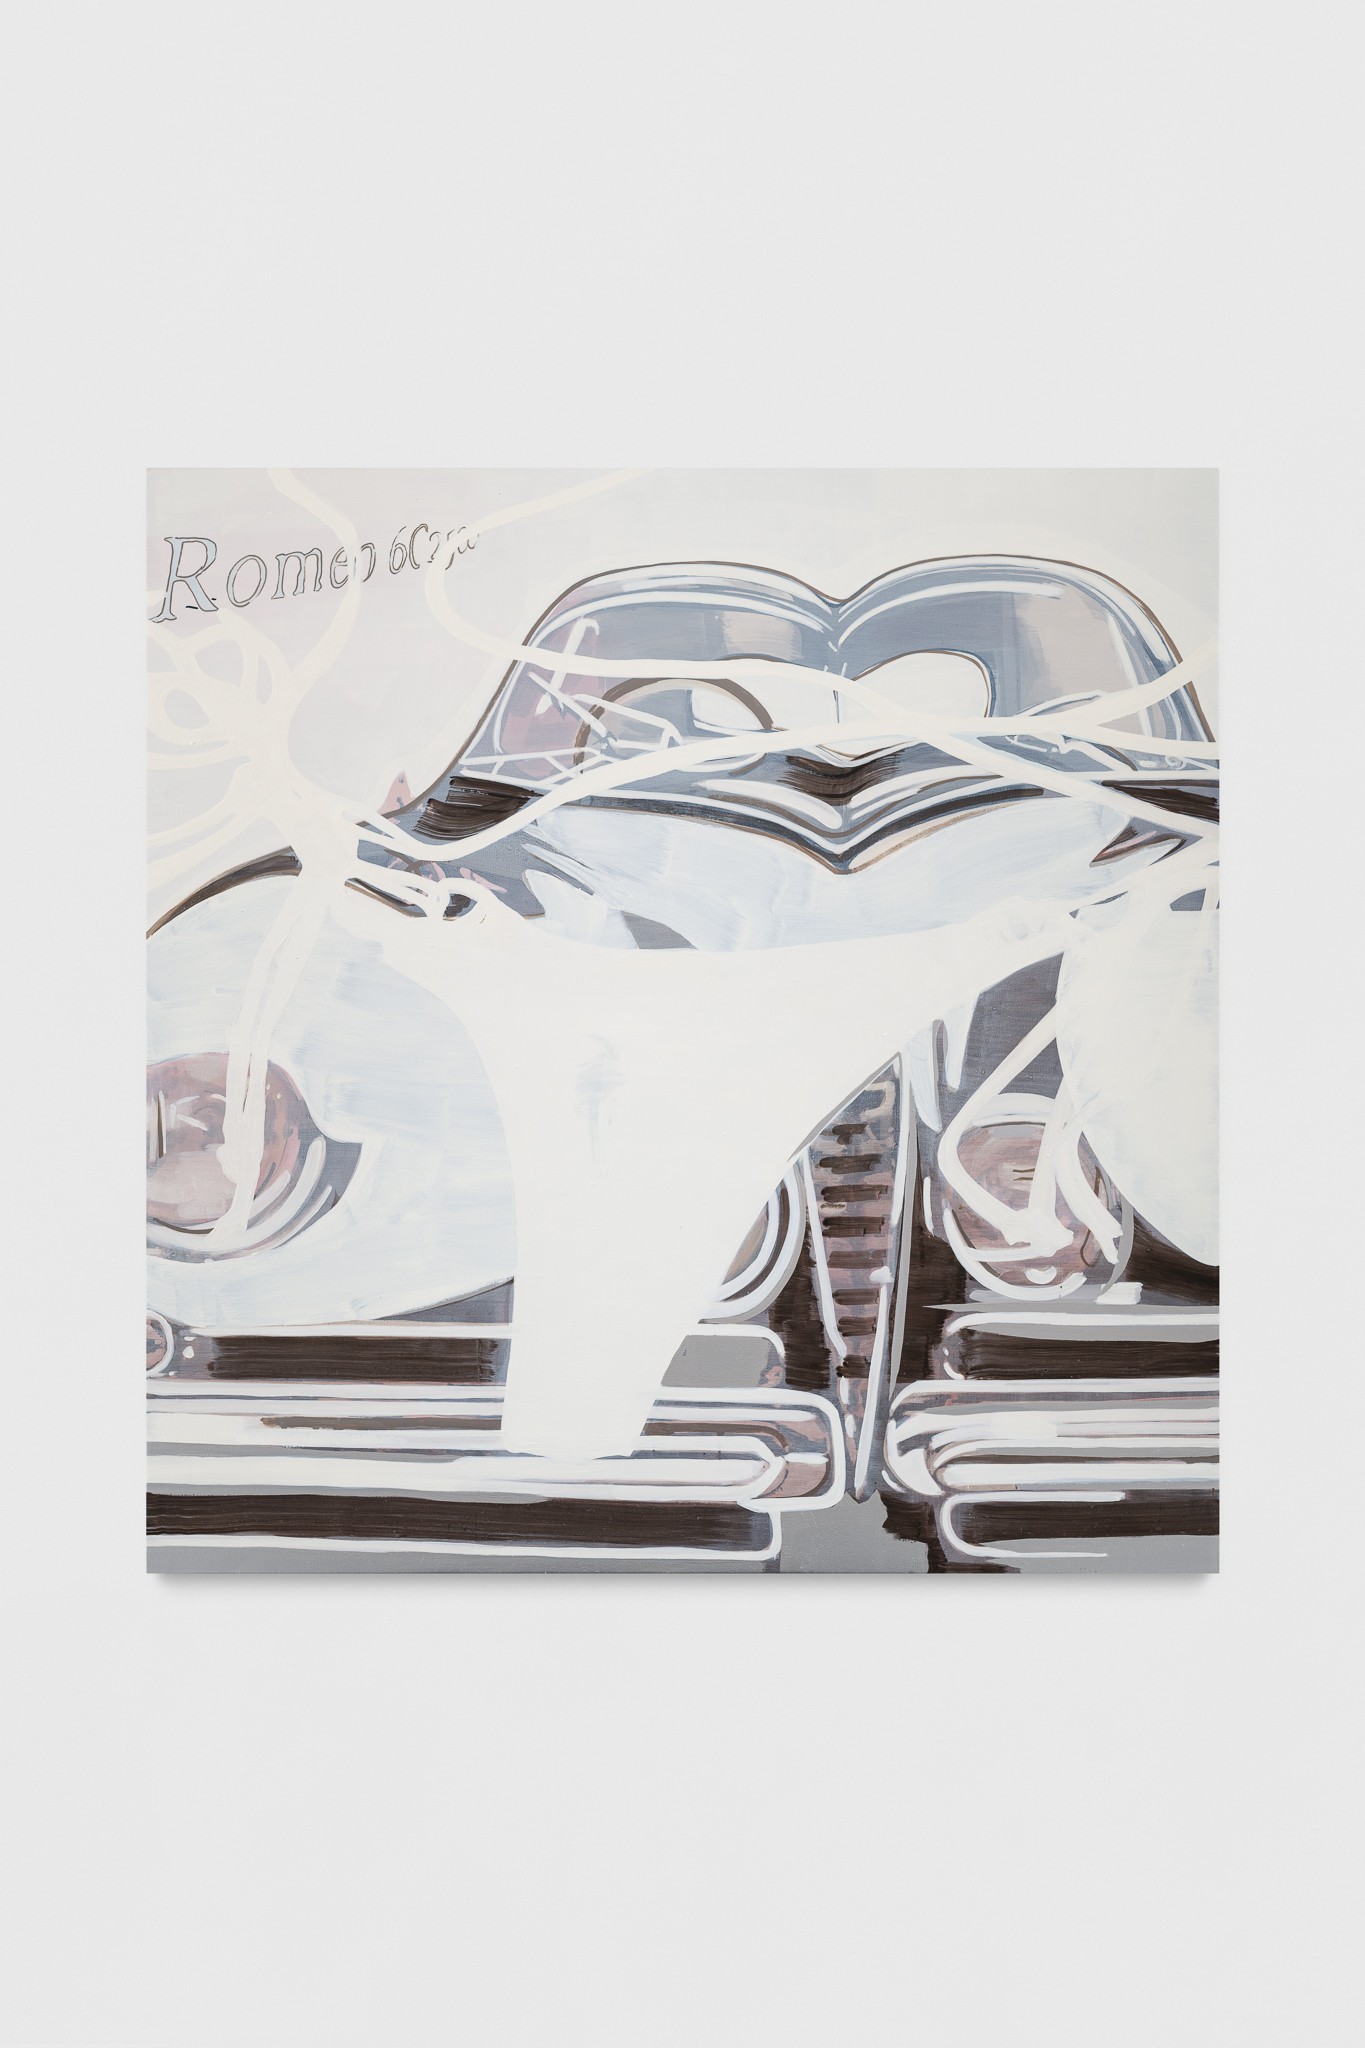 Andrea Fourchy, Alpha Romeo, 2022, oil and acrylic on canvas, 182.9 x 177.8 x 2.5 cm